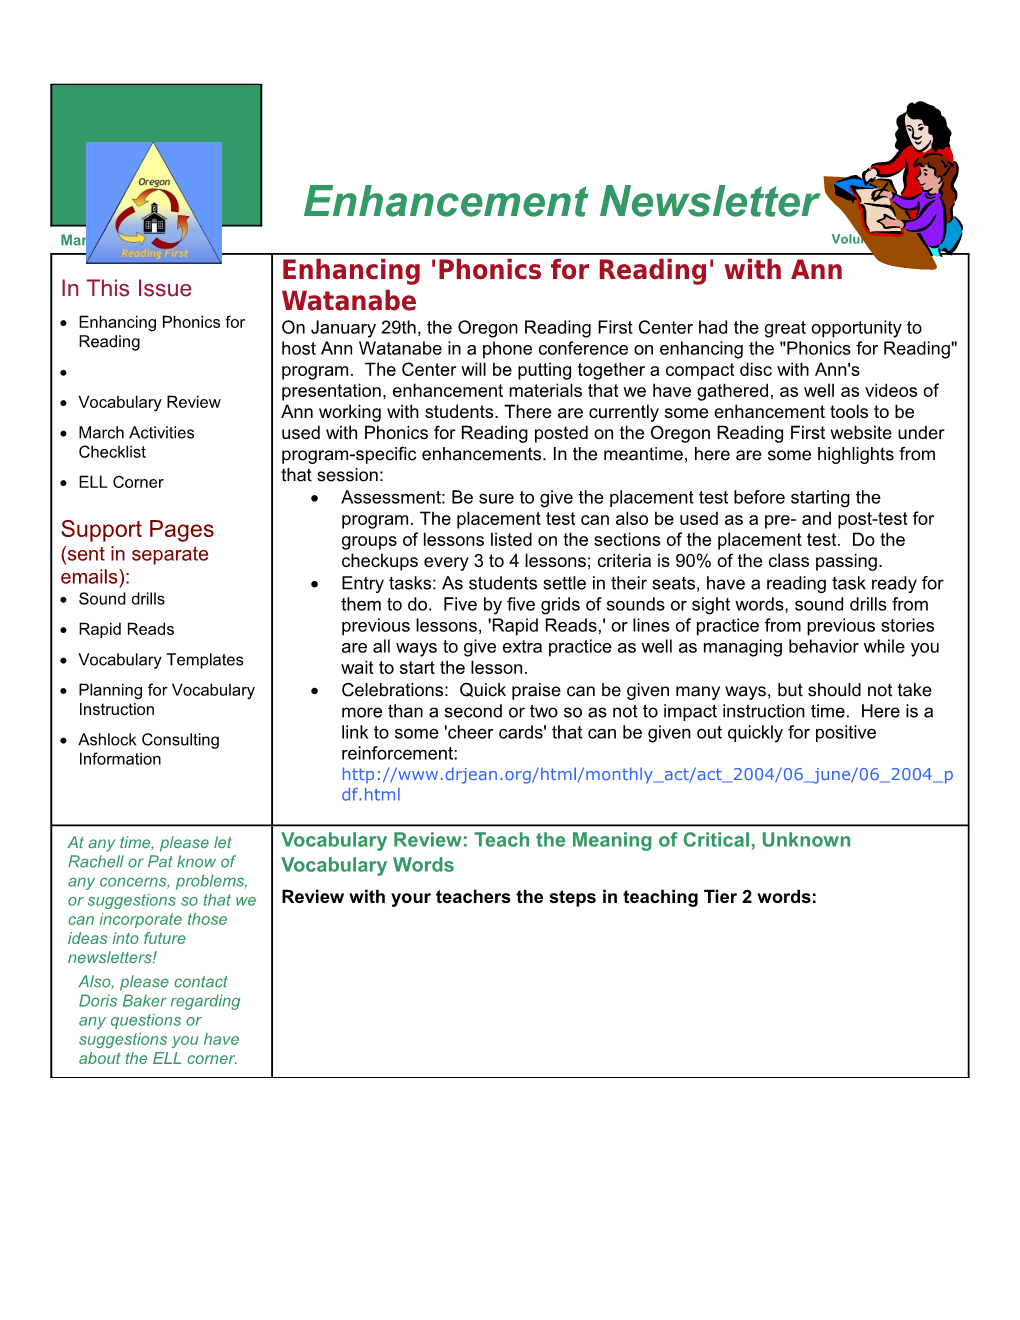 Enhancement Newsletter 1